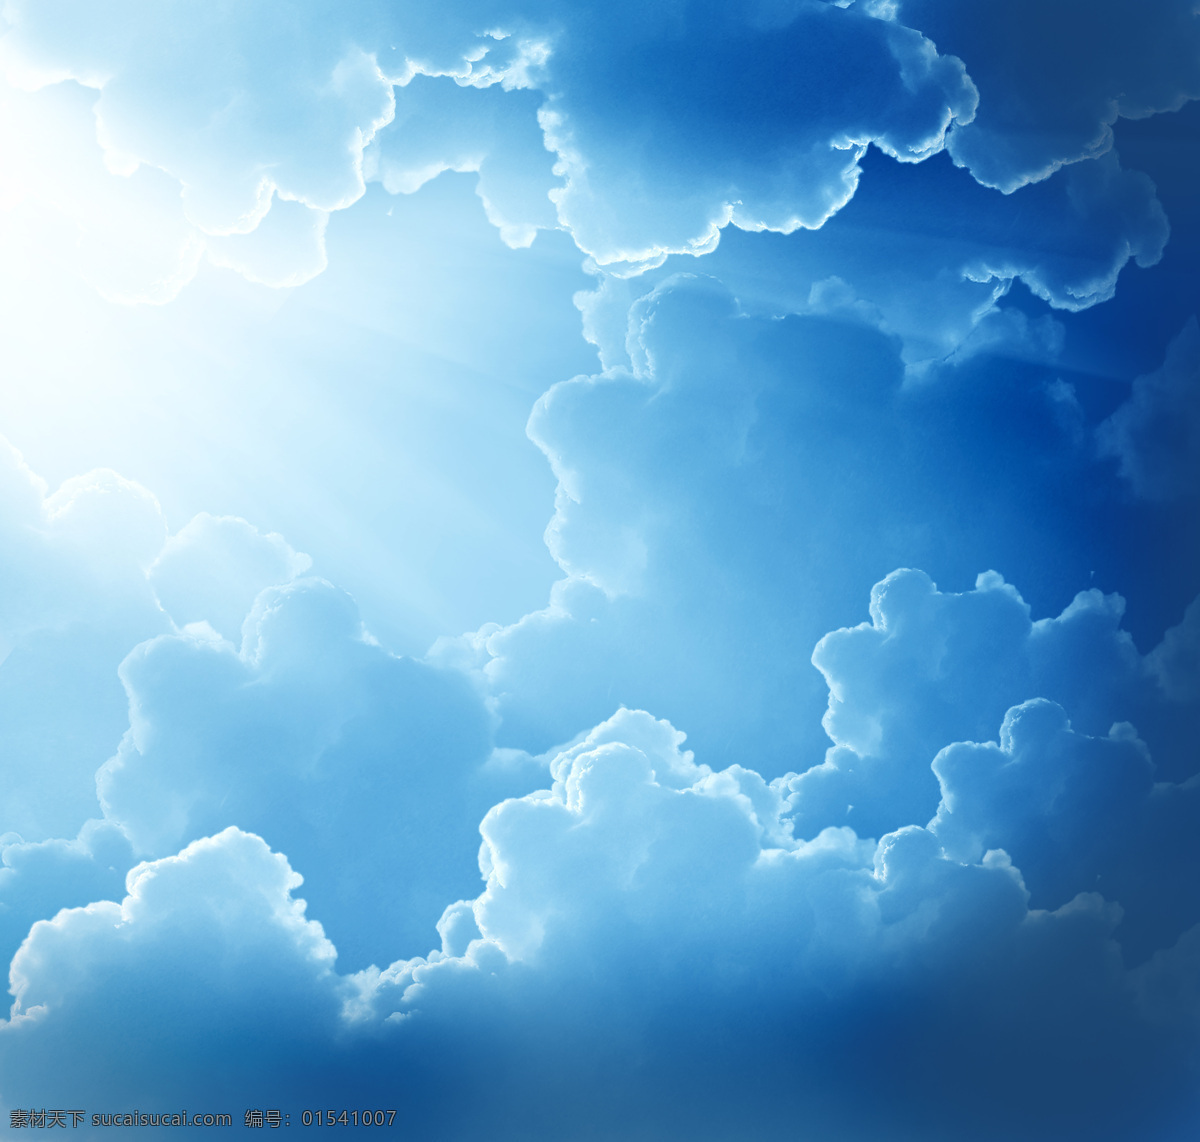 束 阳光 射 开 云 明亮 眼光 严密的白云 奇特 白云 形状 充满 希望 氛围 天空图片 风景图片